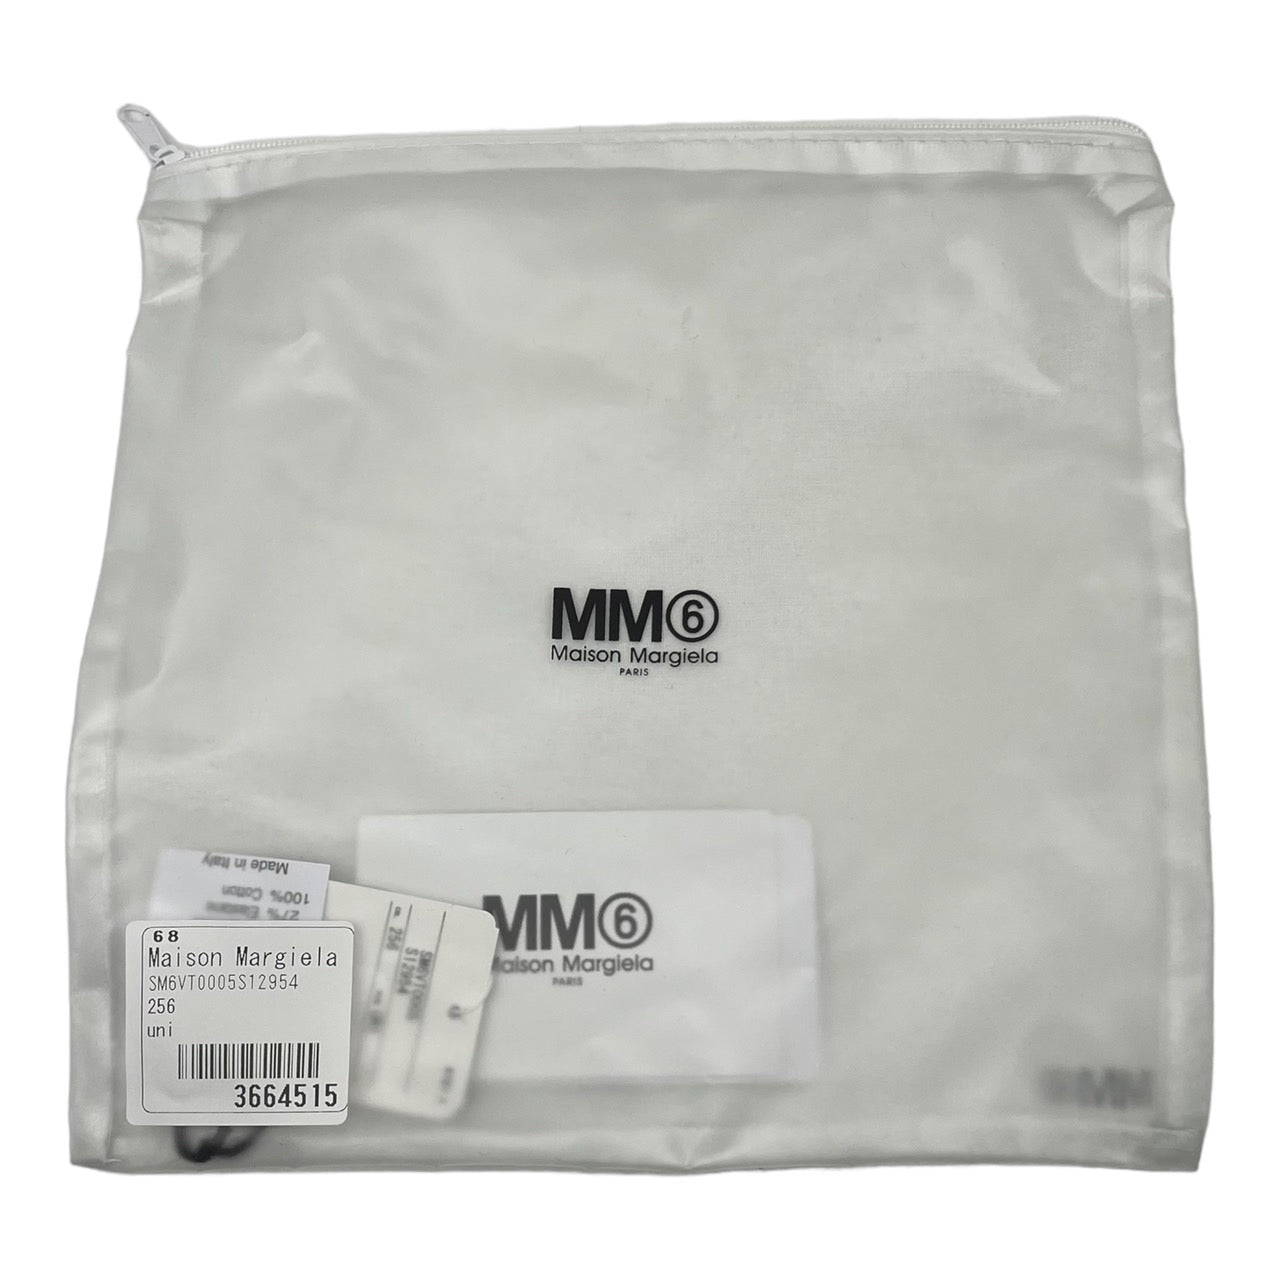 MM6(エムエムシックス)  ロゴカチューシャヘアバンド SM6VT0005S12954 FREE ピンク 袋付